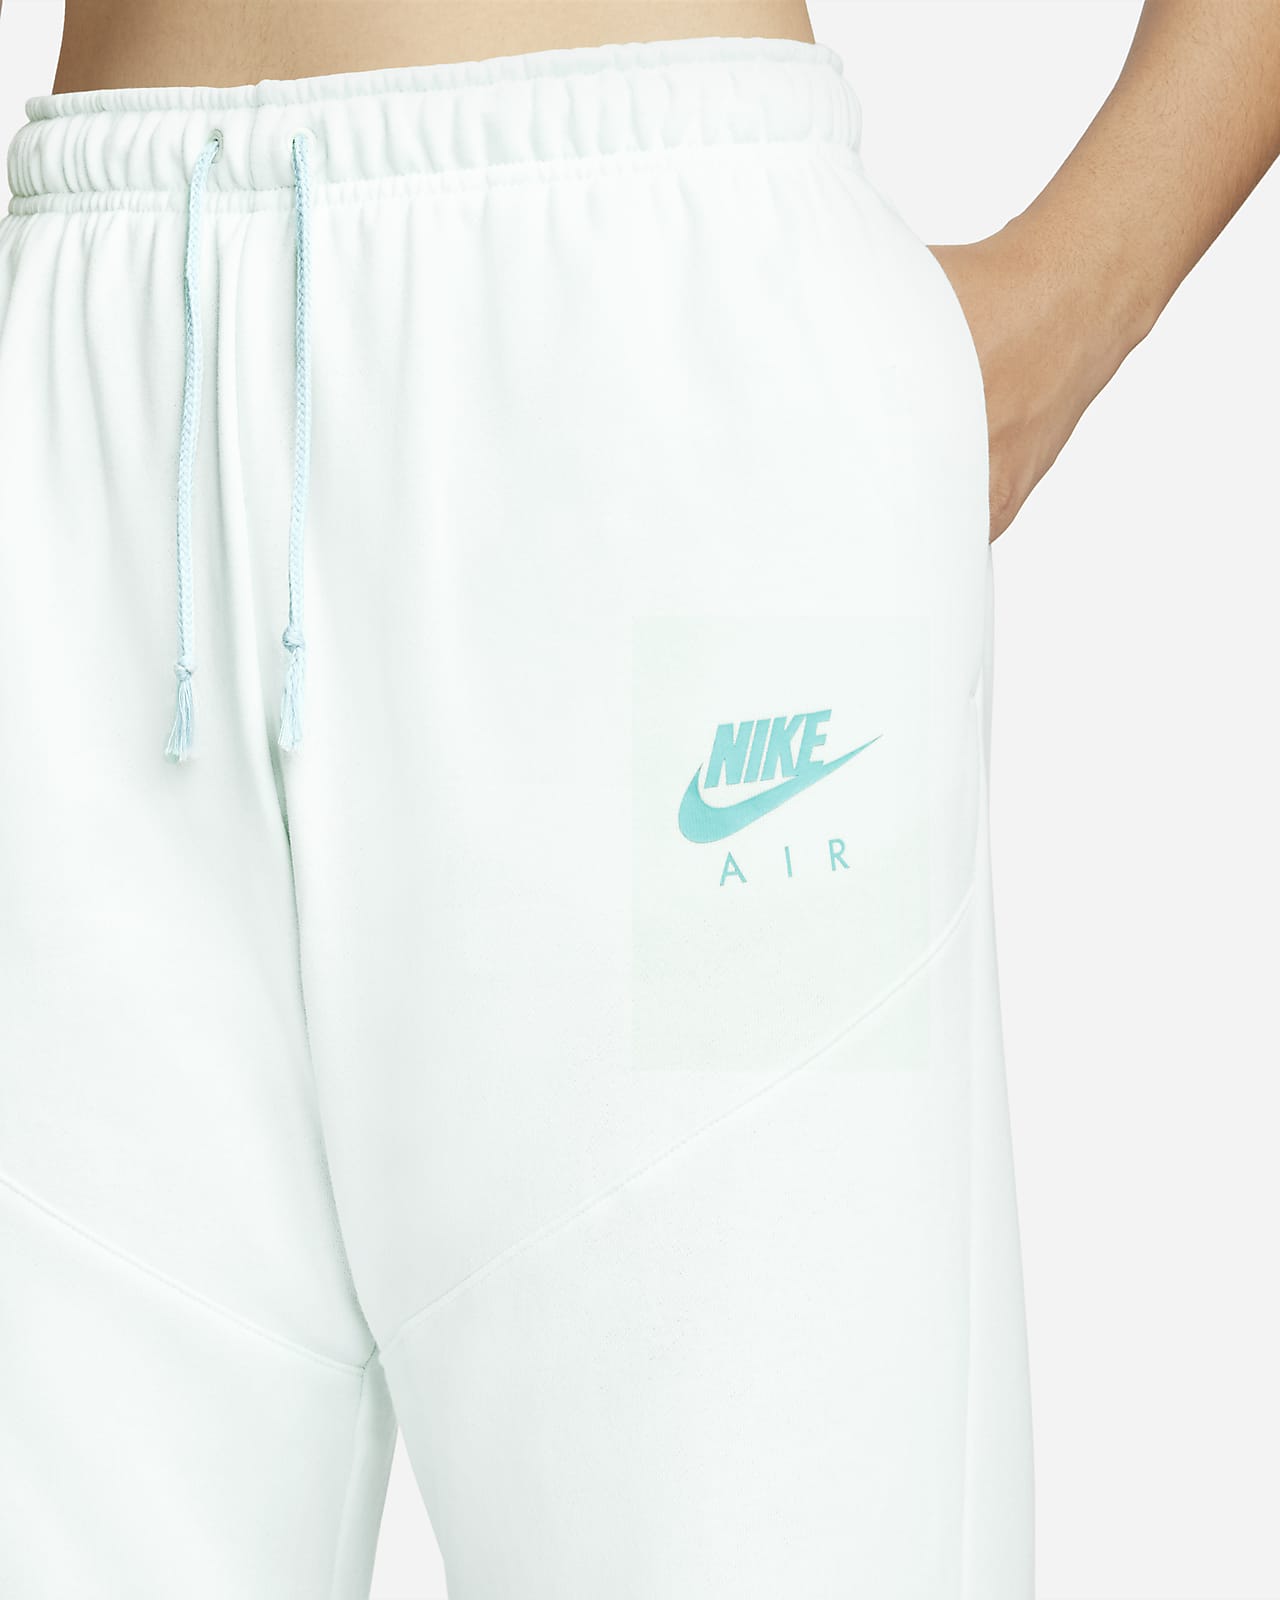 Pantalon tissu Fleece Nike Air. CH